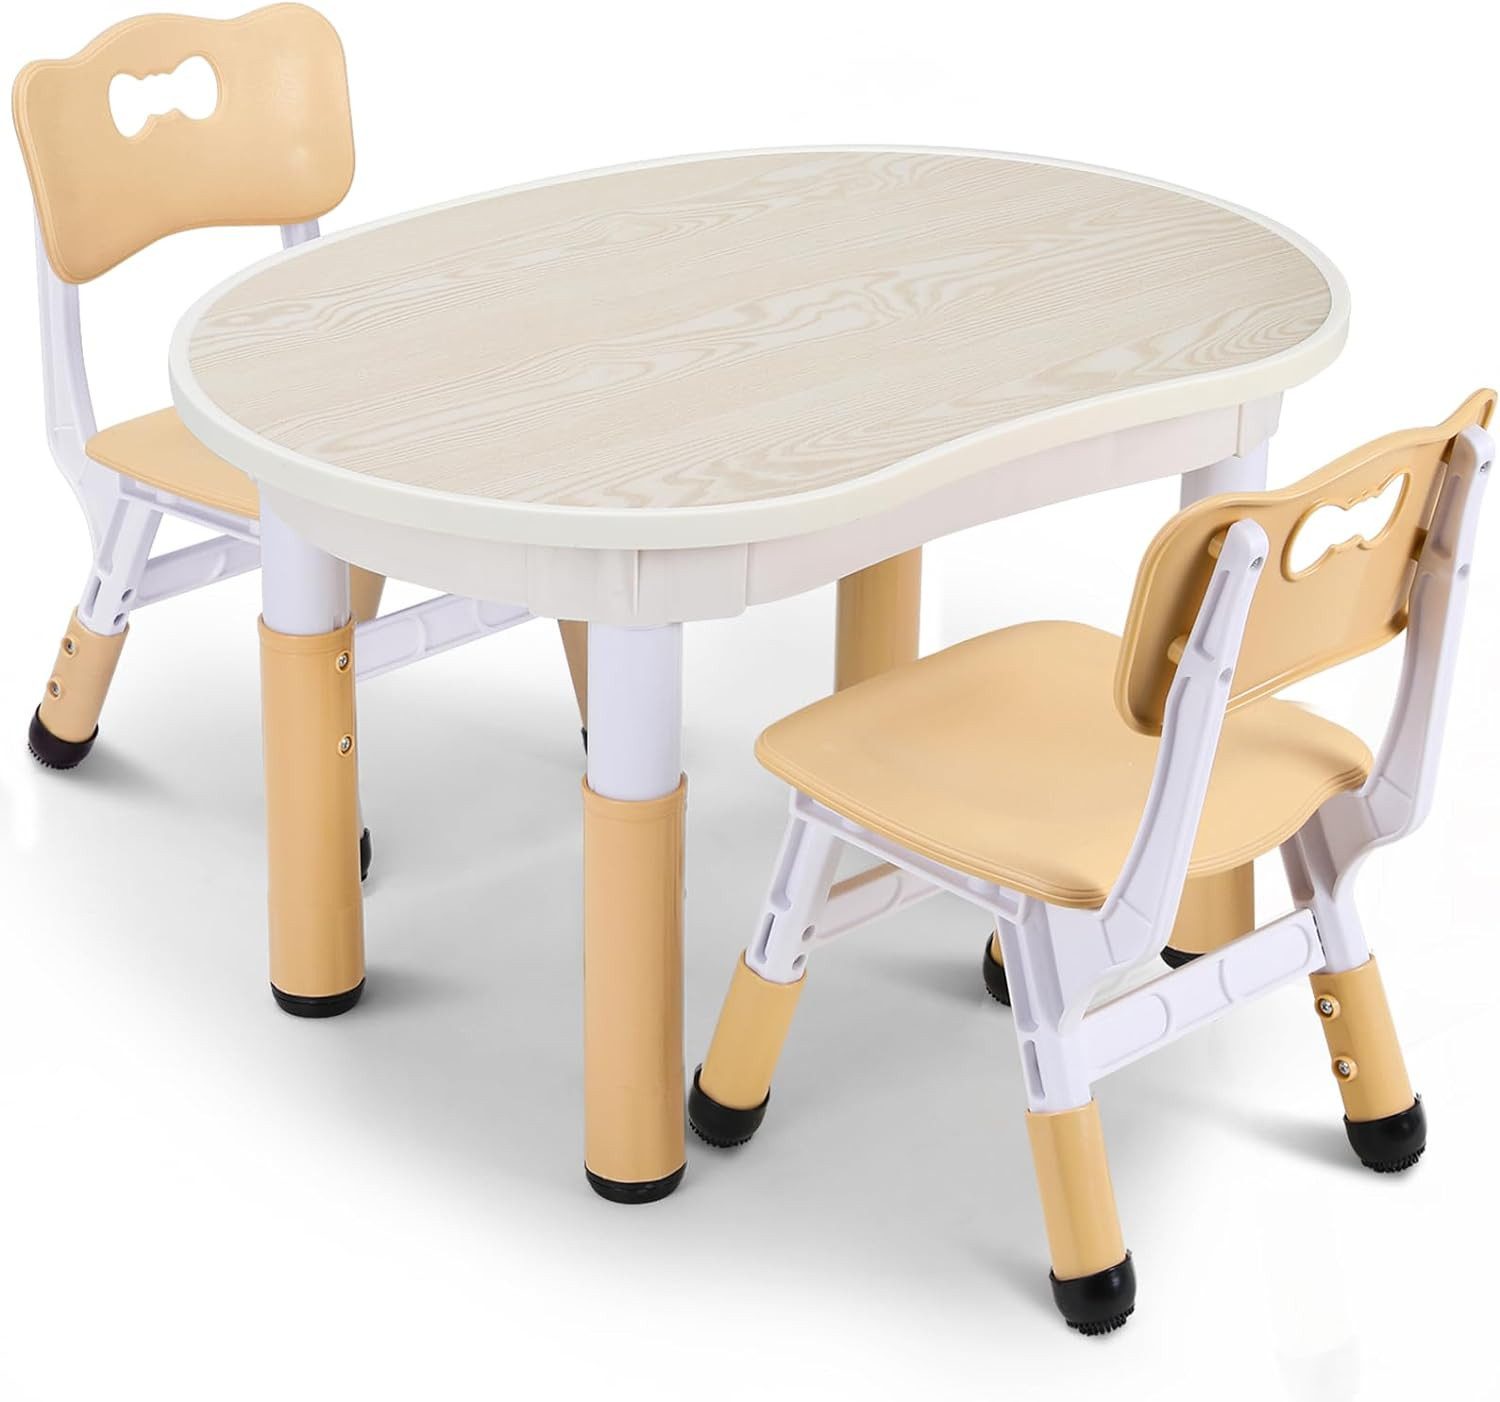 TLGREEN Kindertisch Kindersitzgruppe Höhenverstellbar,Maltisch Kinder Tisch Stuhl Set